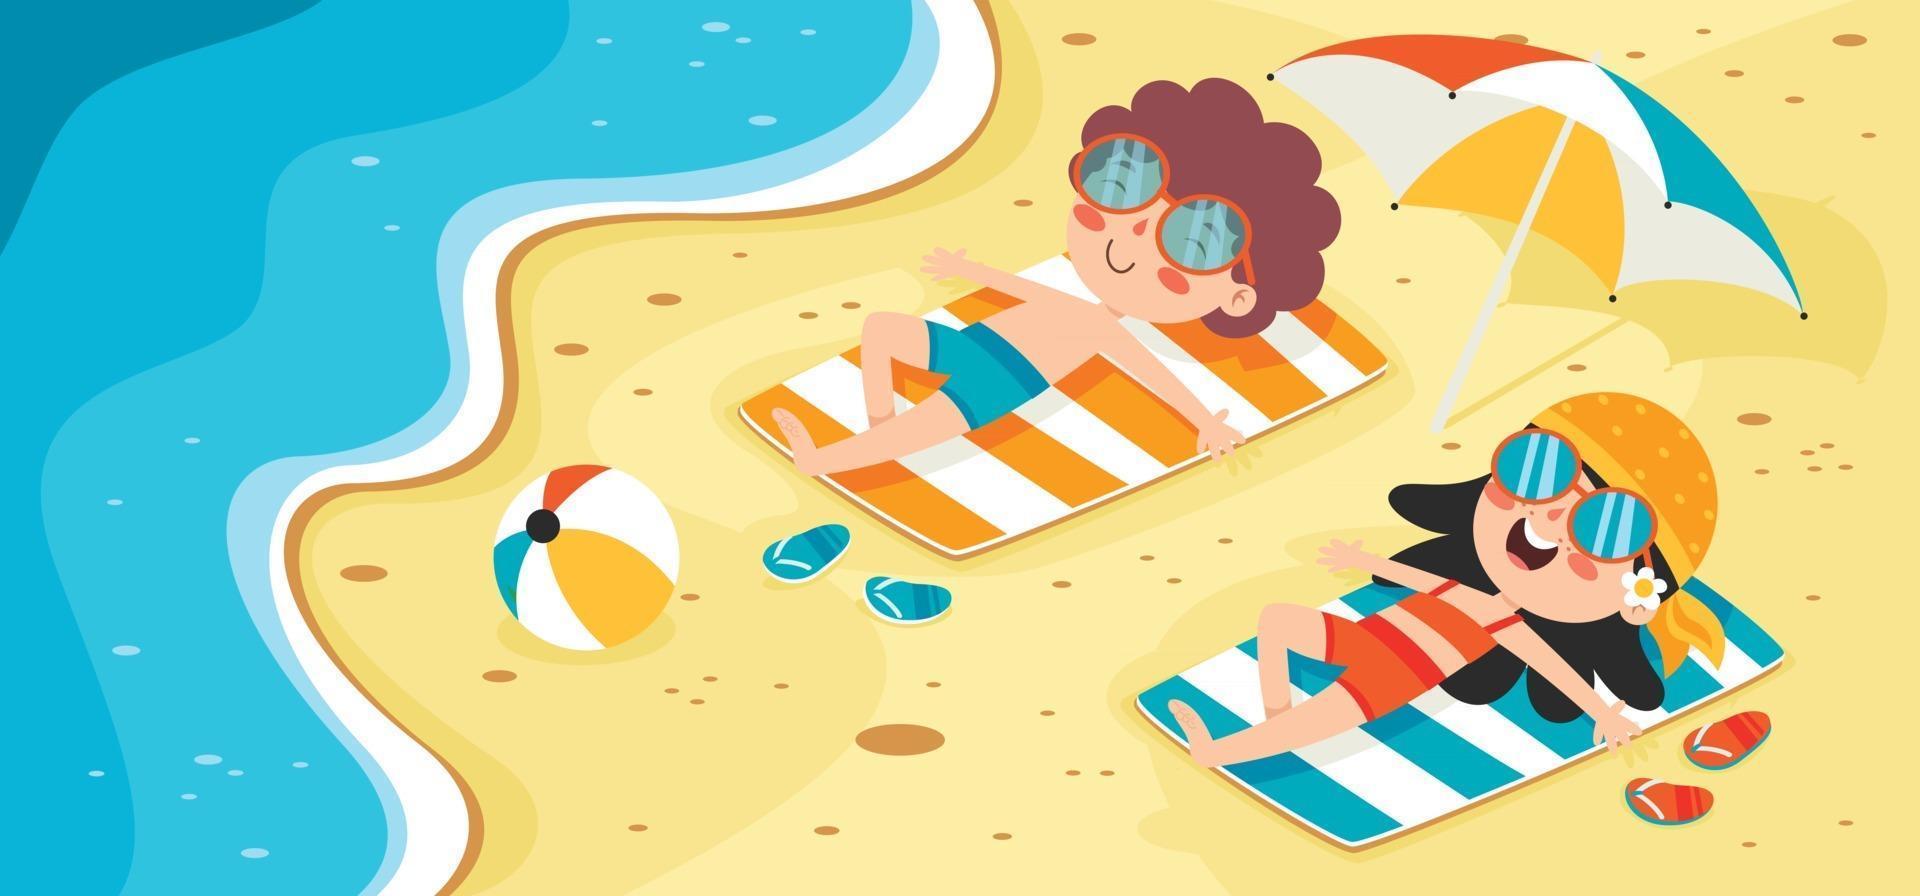 banner de verano plano con personaje de dibujos animados vector